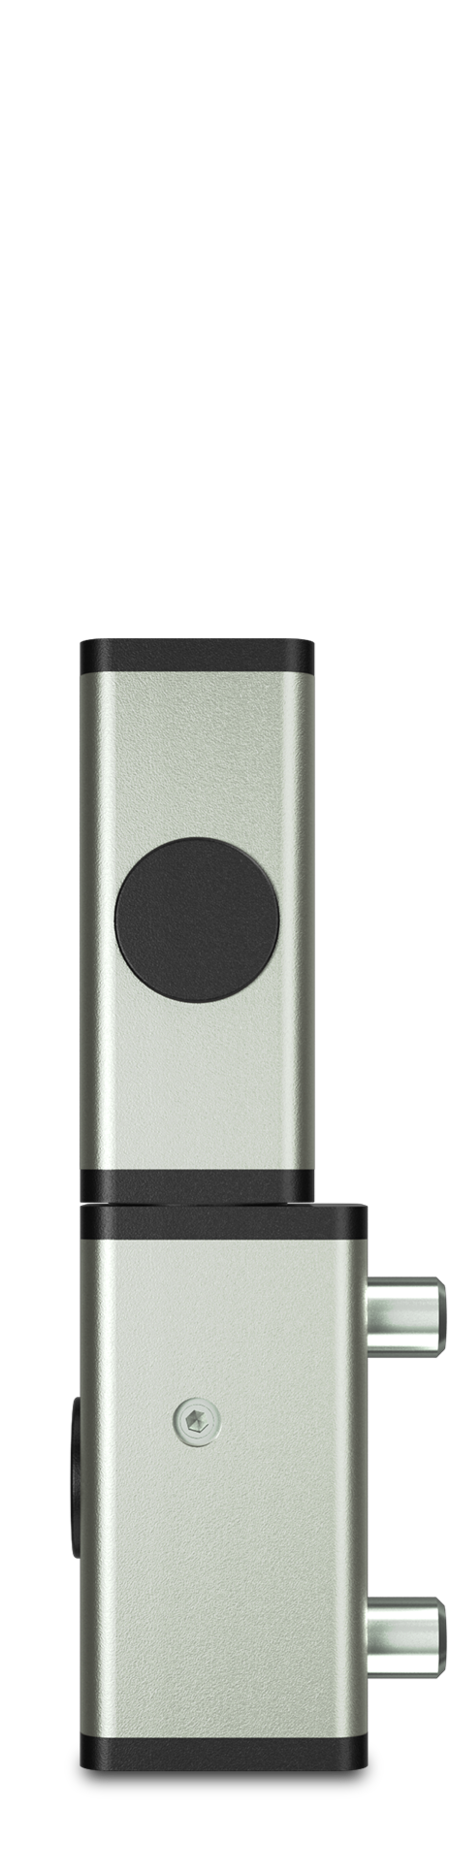 Eckscharnier 2-teilig Edelstahl, gesandstrahlt, rechts, steigend, aushängbar, für Türen ab 35 mm Überschlag, mit Zapfen, mit schwarzen Abdeckkappen